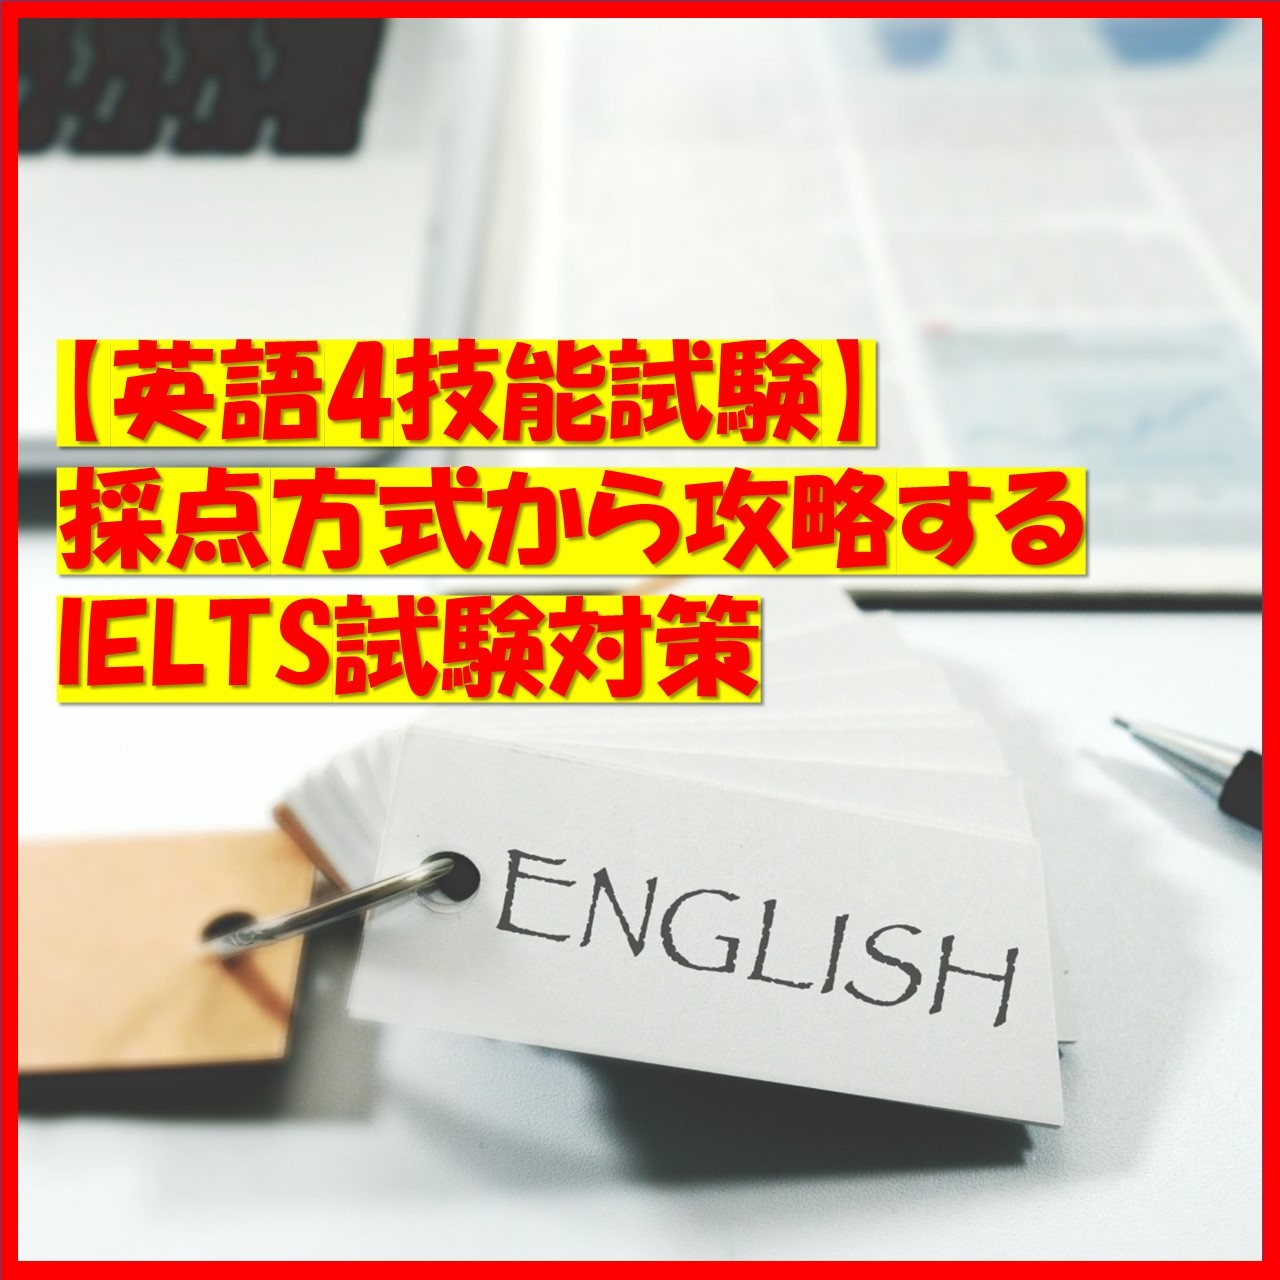 【英語4技能試験】採点方式から攻略するIELTS試験対策